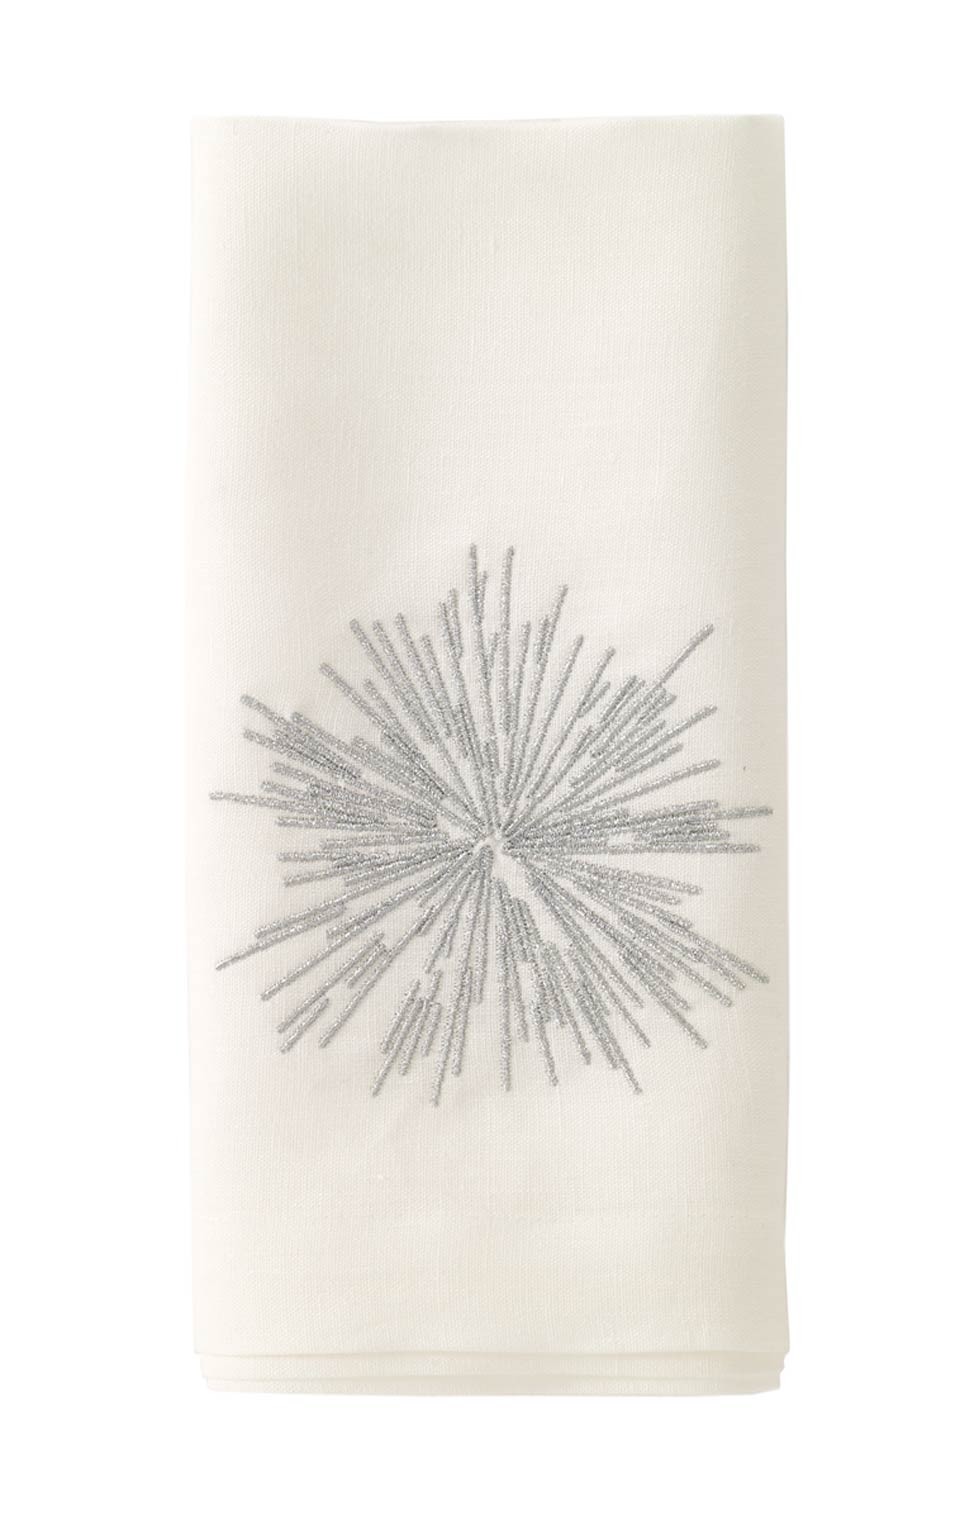 Bodrum Starburst Silver Embroidered Napkin Set/6 22"